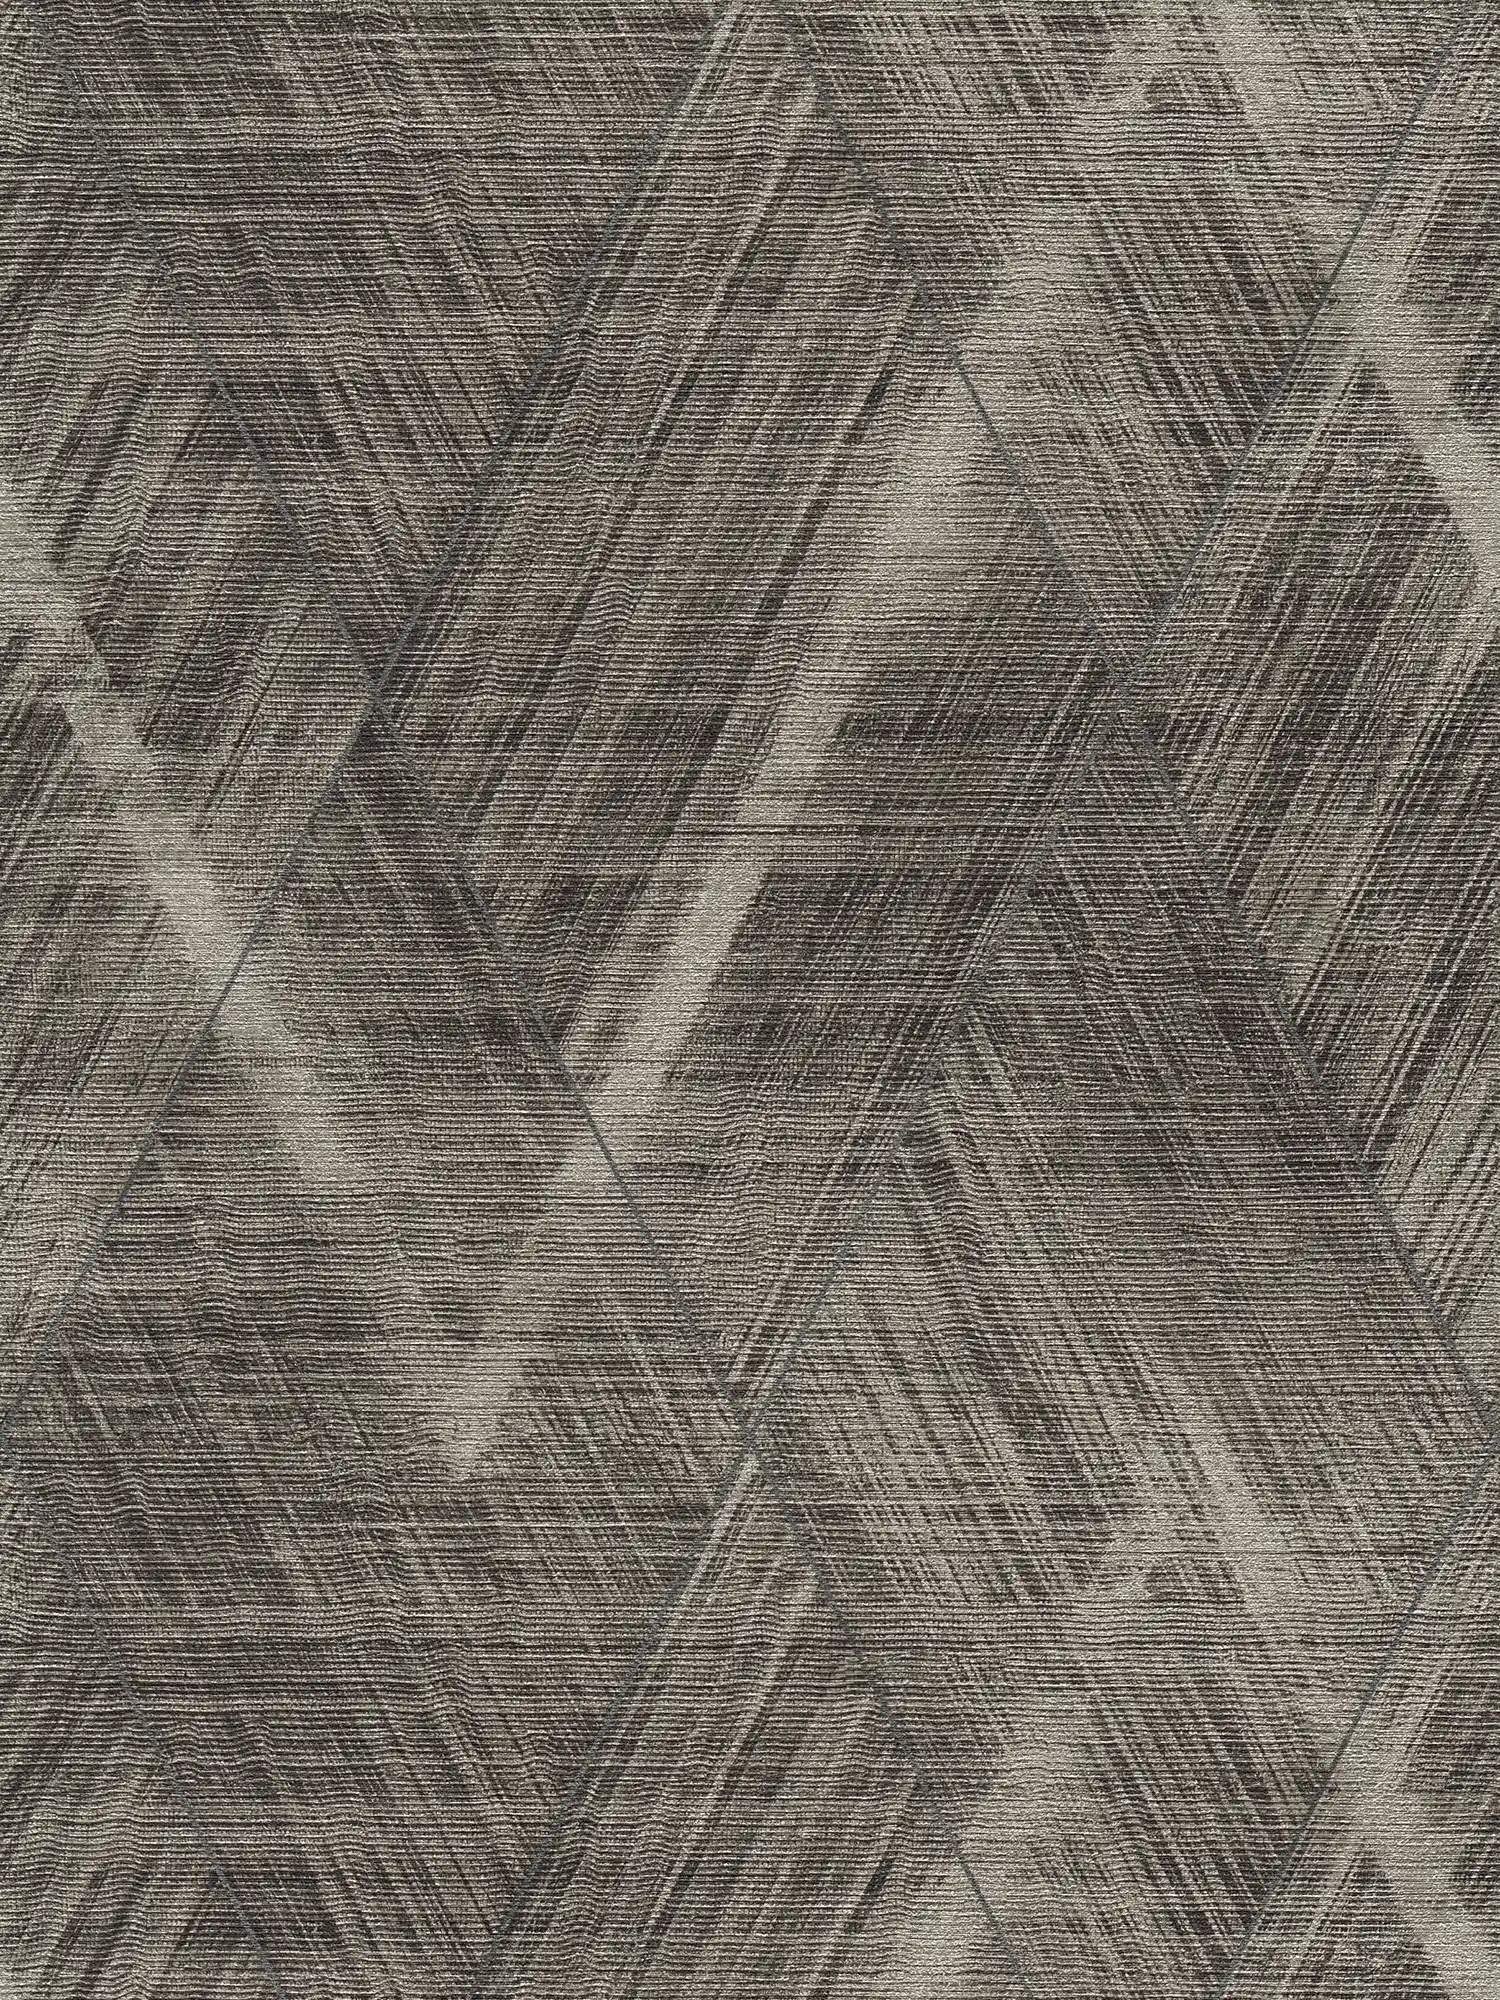         Textiloptik Tapete mit Rauten Muster – Metallic, Grau
    